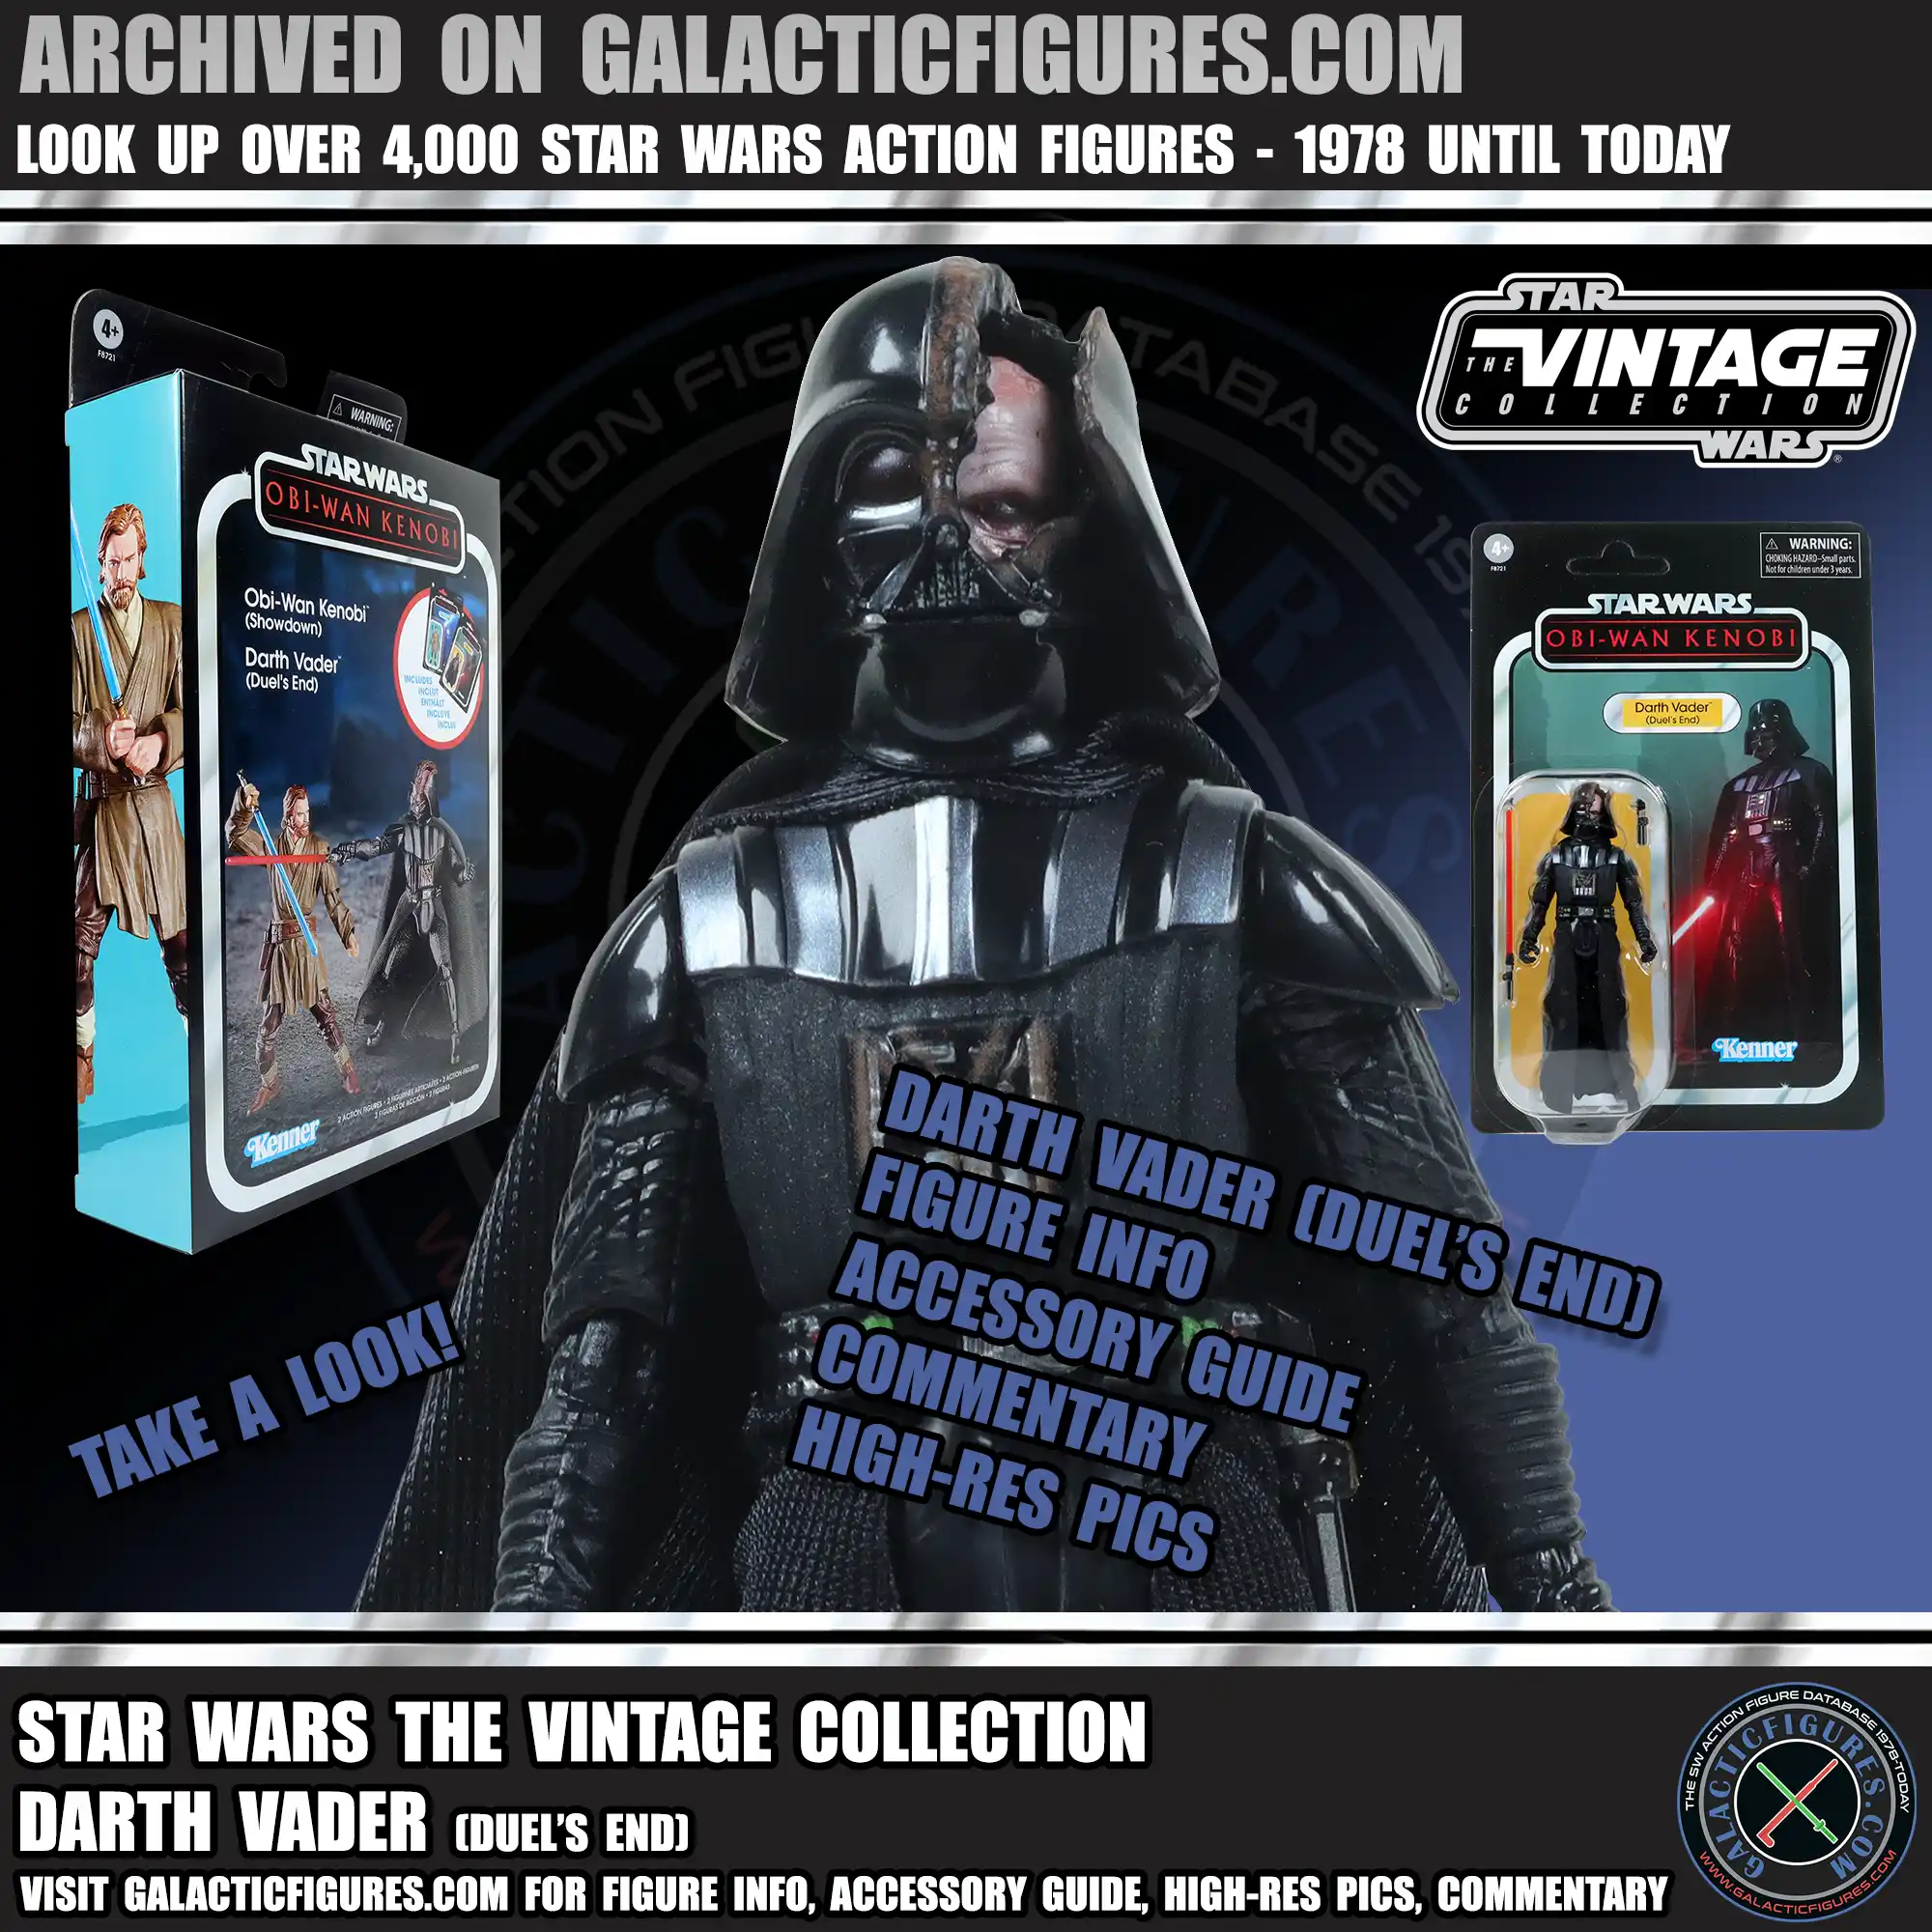 Vintage Collection Darth Vader Duel's End